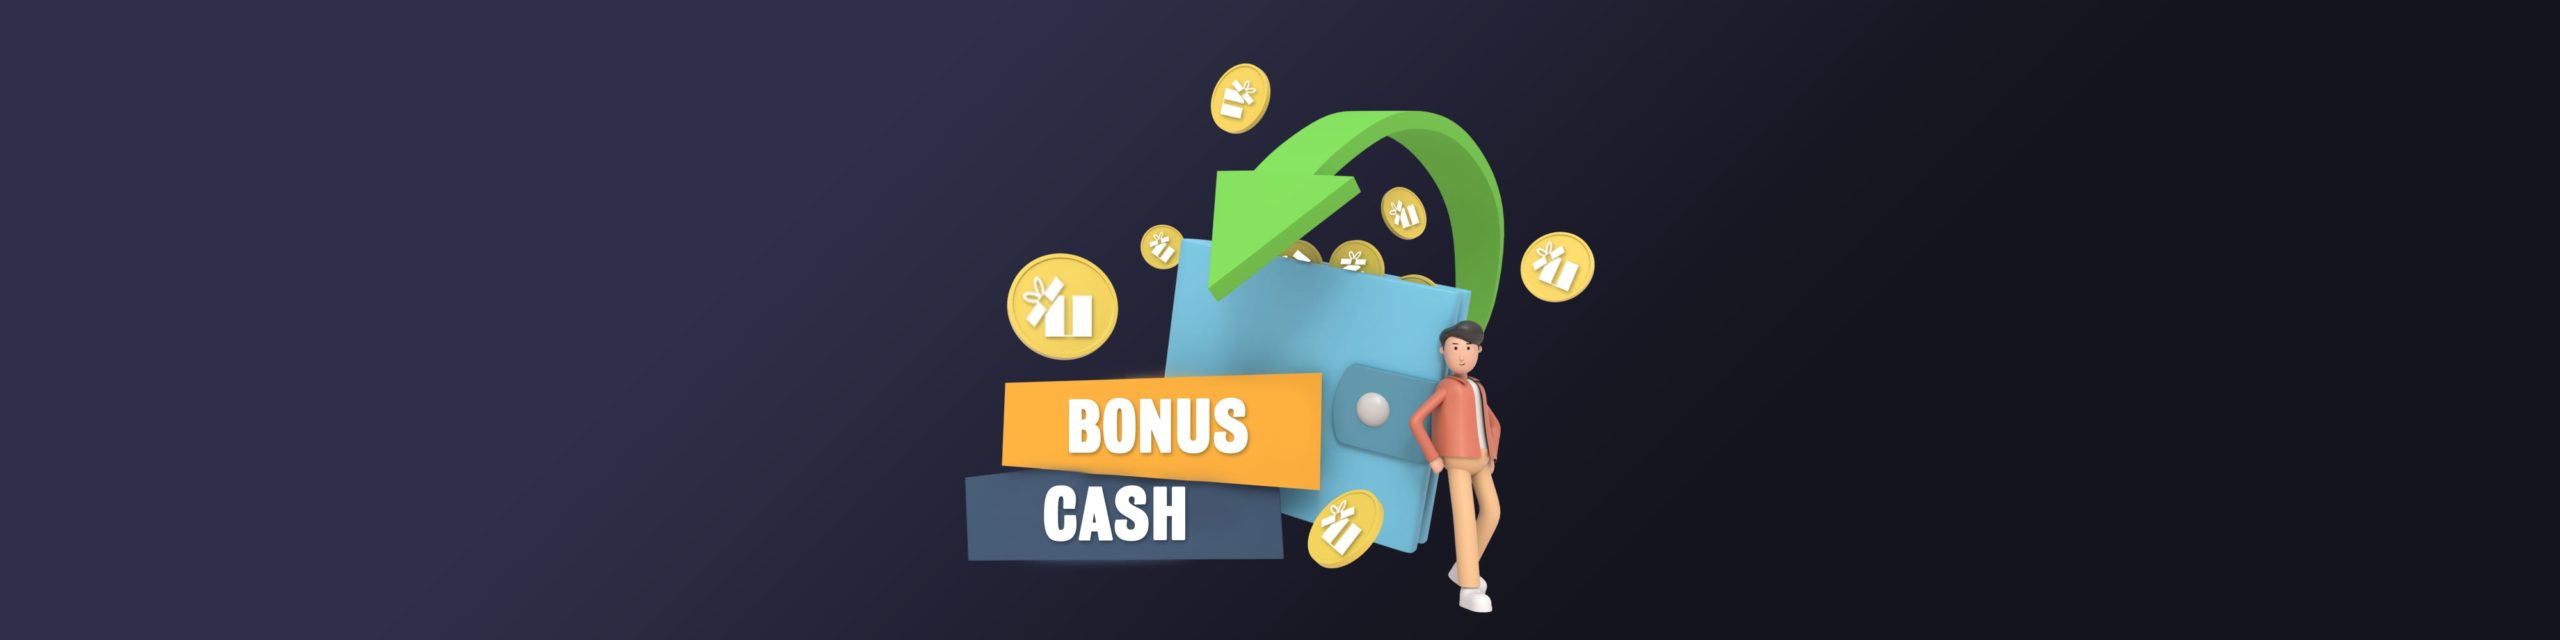 EazeGames introduces Bonus Cash